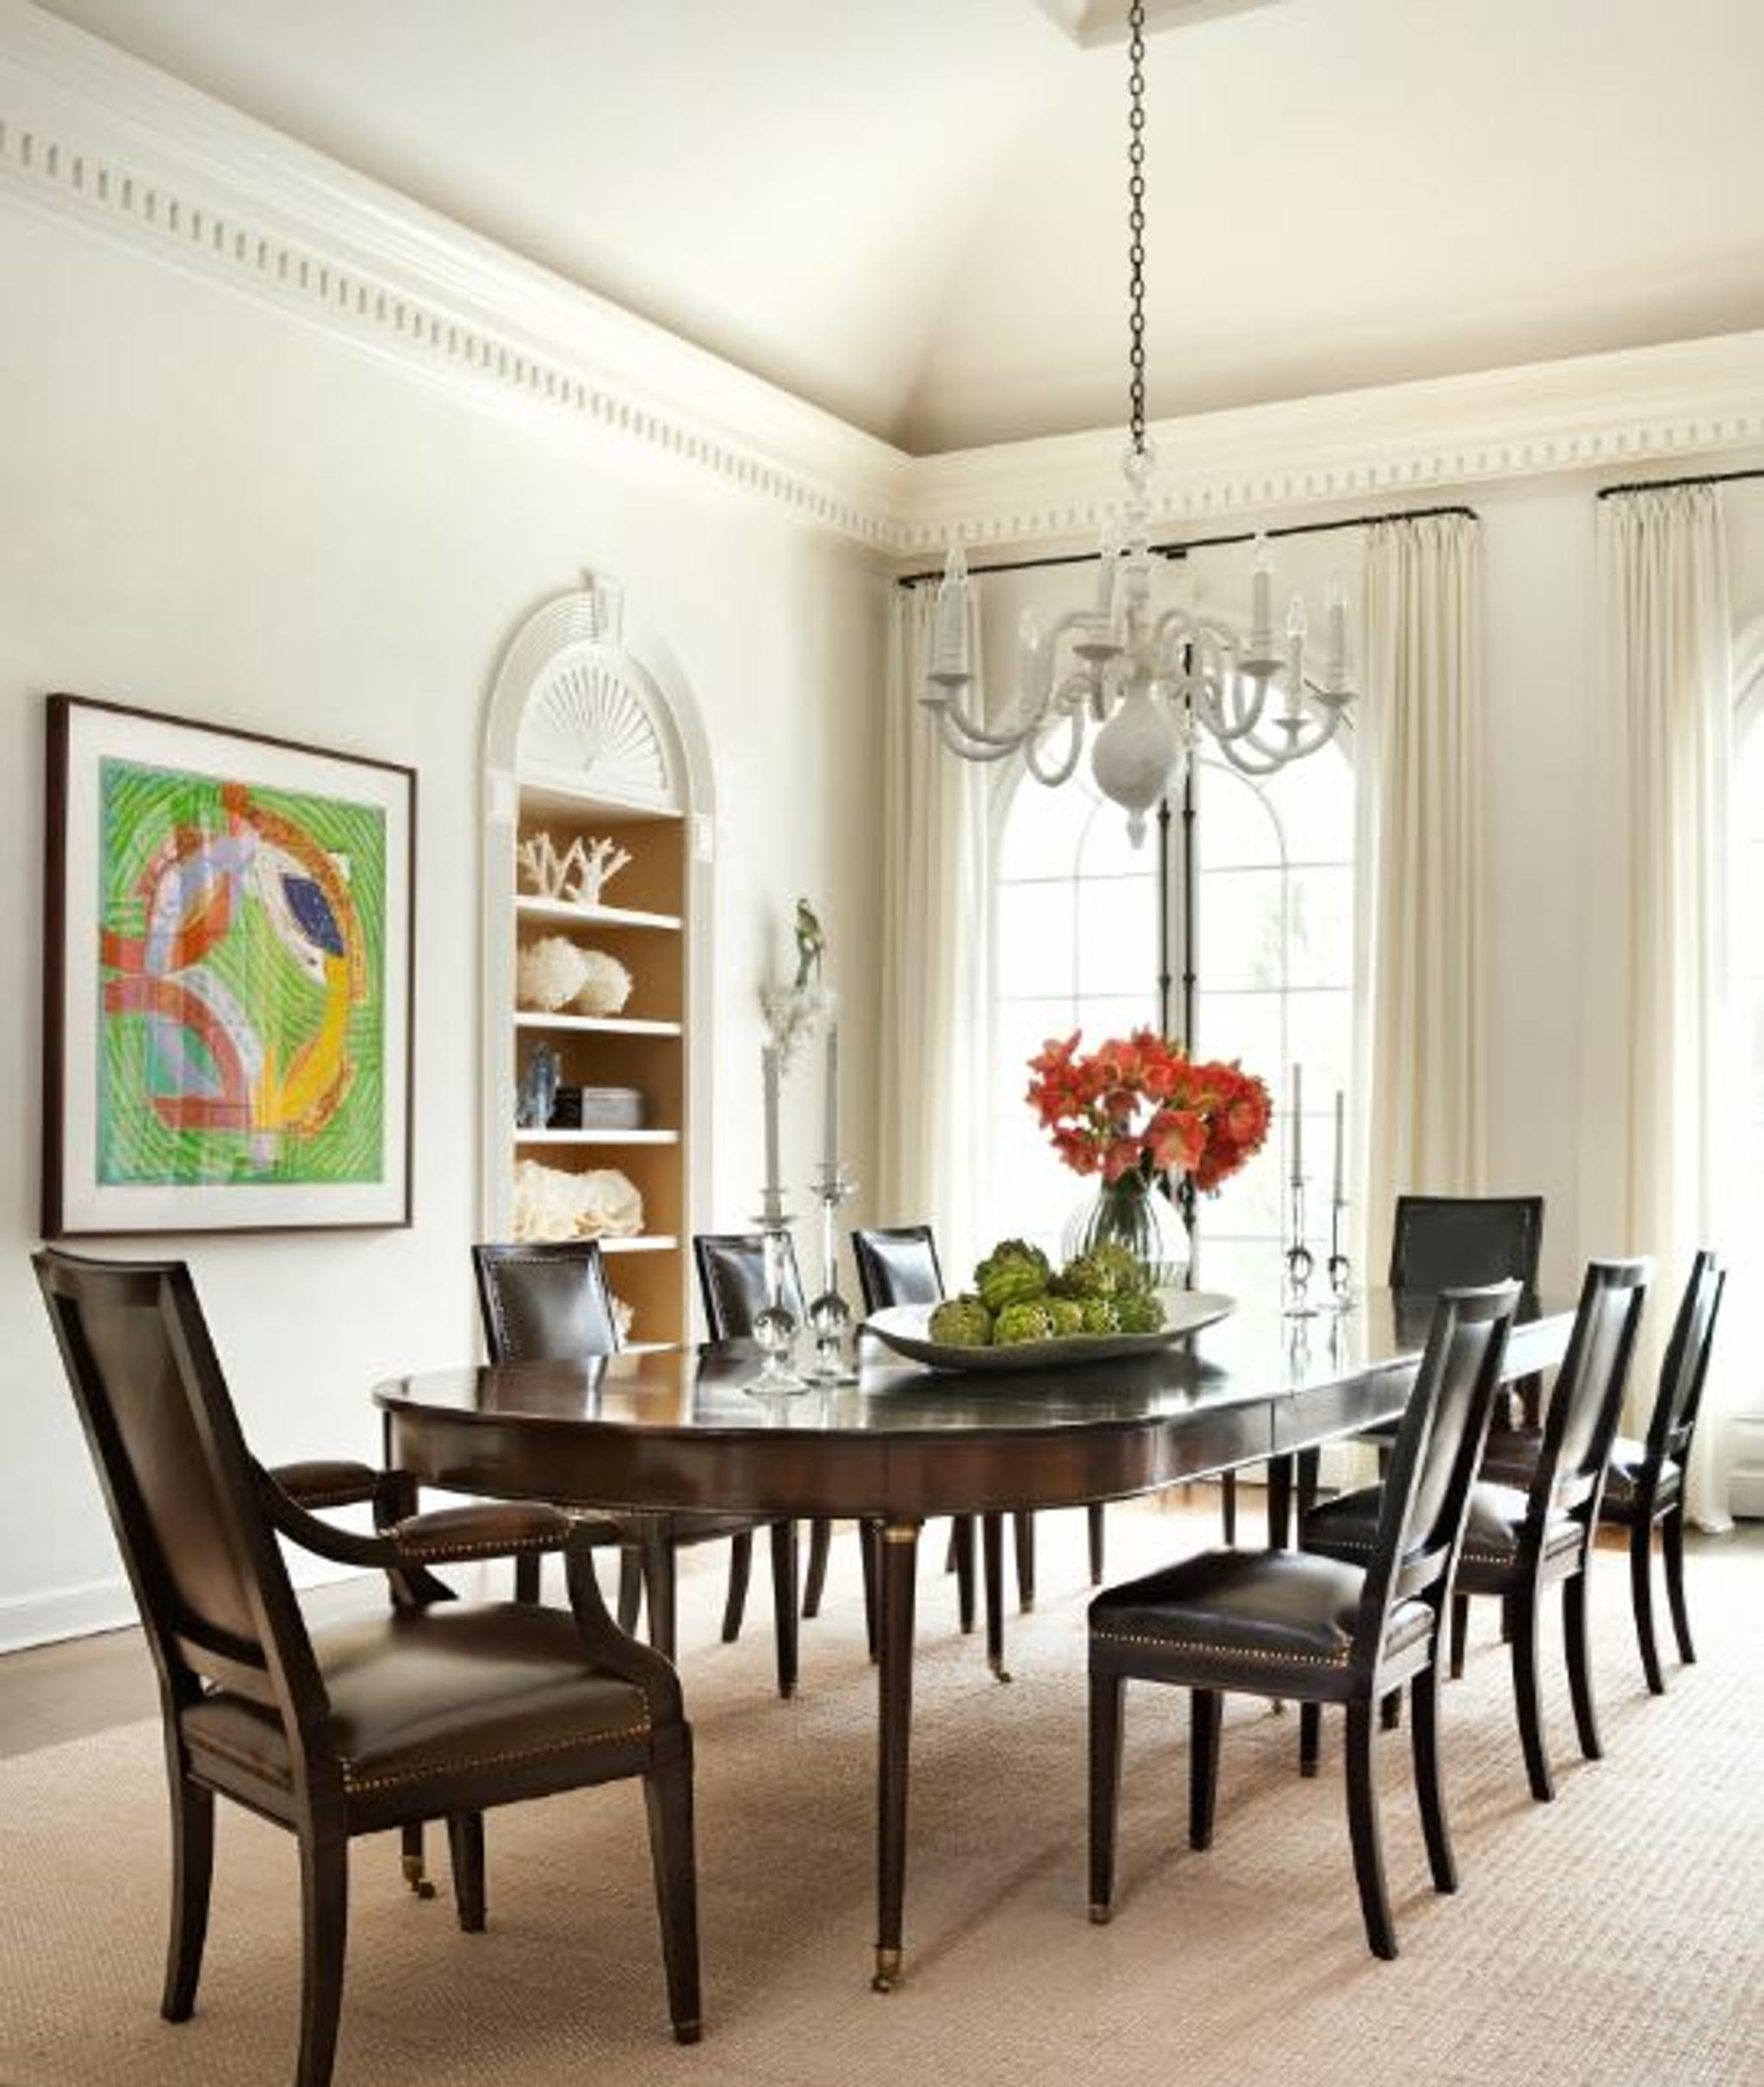 Une table de salle à manger ancienne richement polie et une chaise de salle à manger ébonisée avec un revêtement en cuir noir offrent un contraste graphique avec la salle à manger adjacente, baignée de blanc, avec un lustre en plâtre blanc.